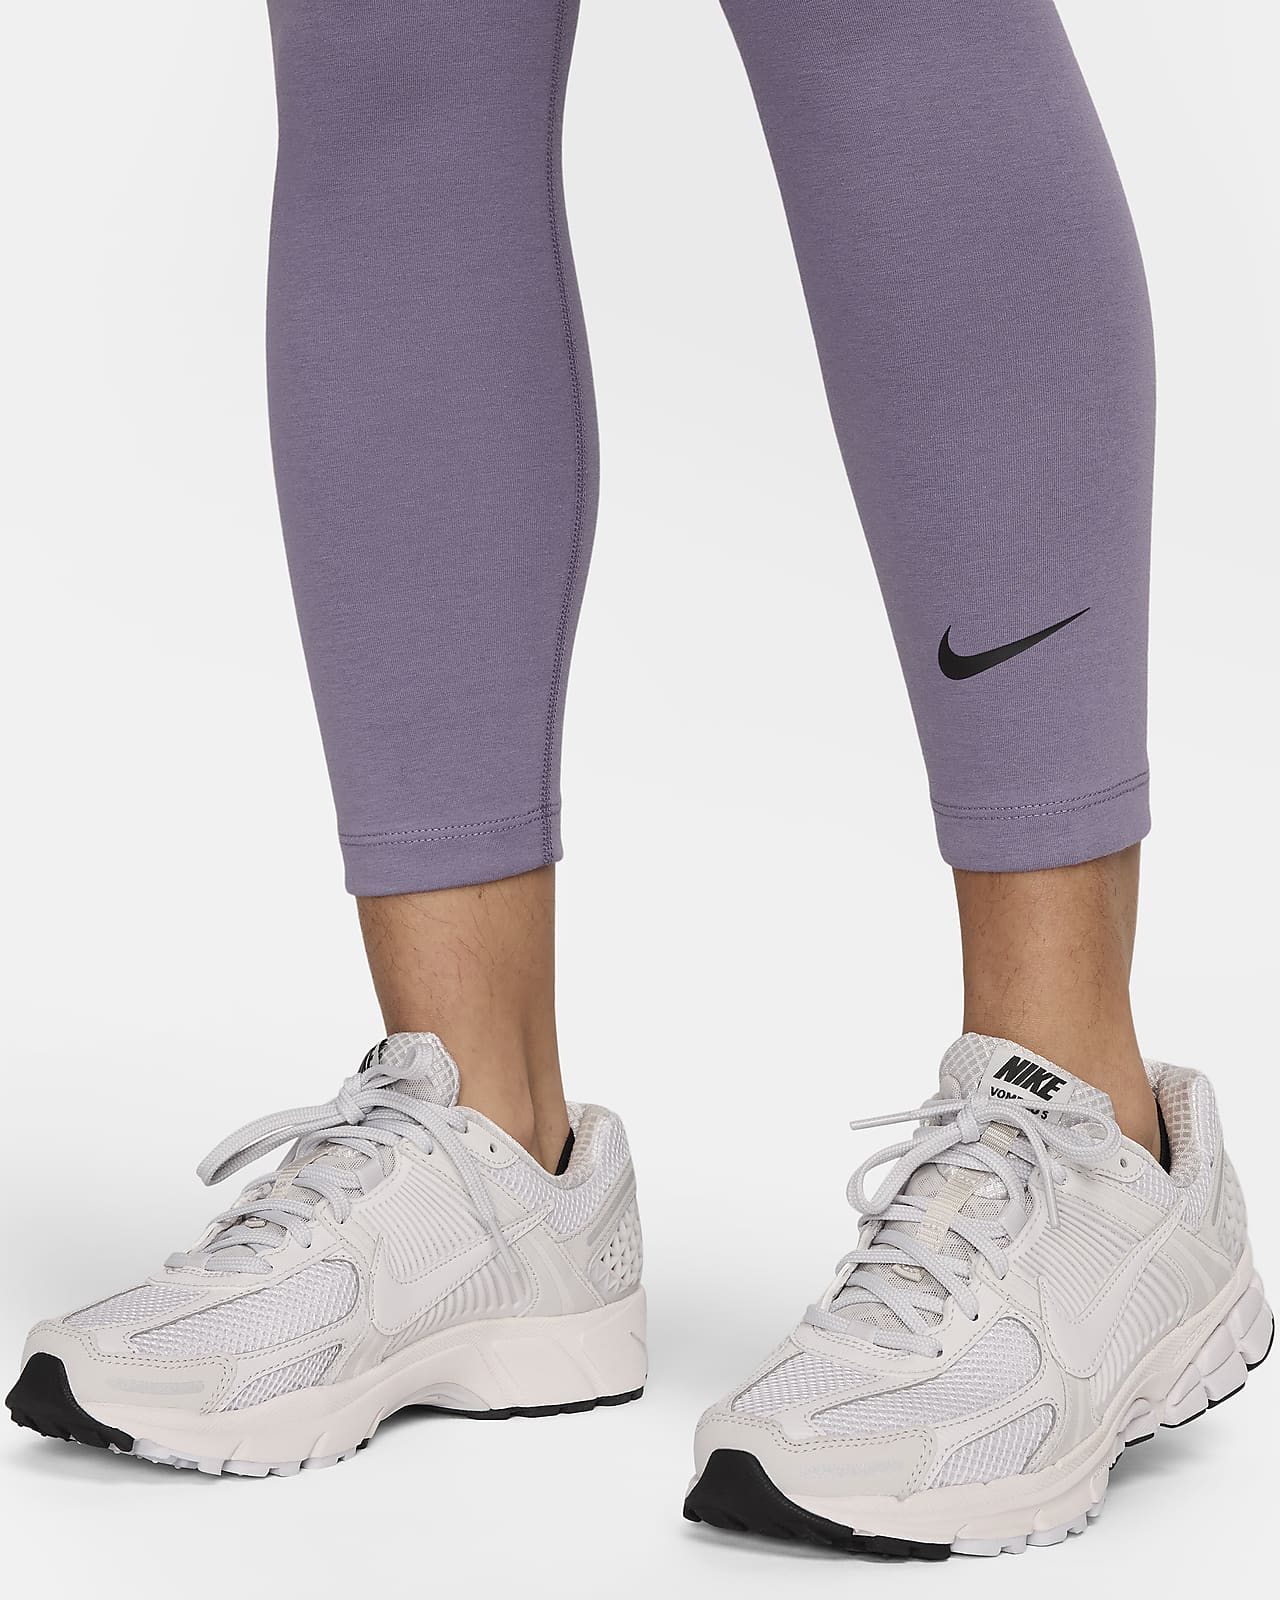 Damskie legginsy z wysokim stanem i grafiką Nike Sportswear Classics